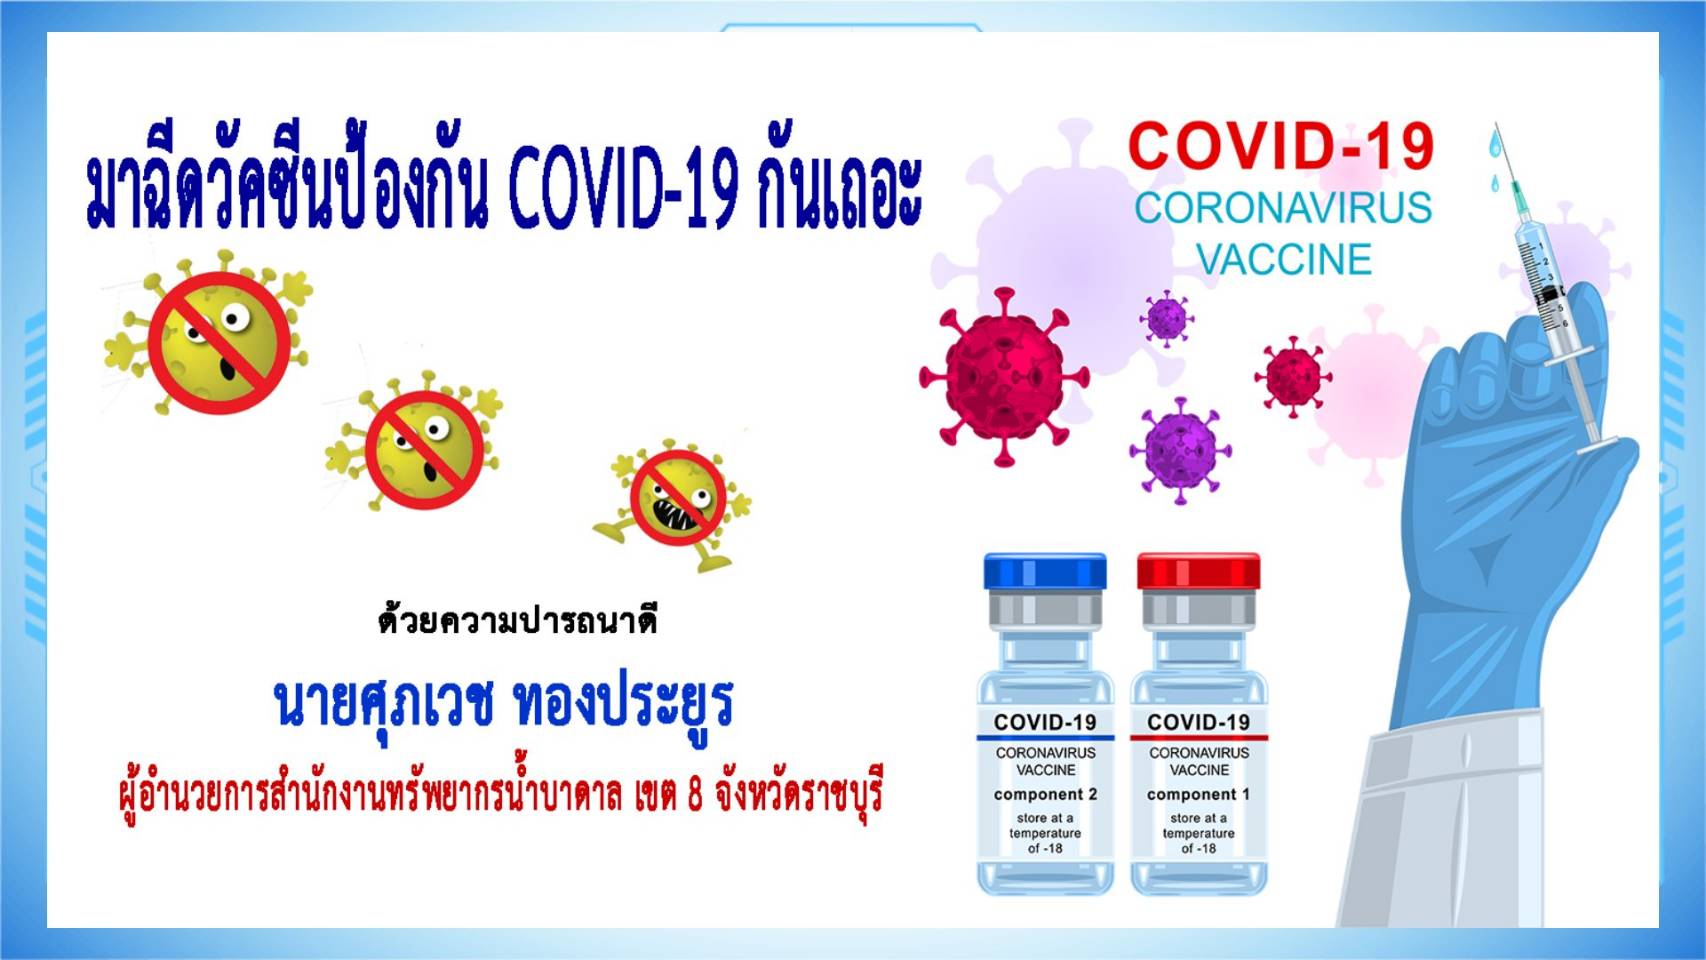 ราชบุรี-ผอ.สนง.ทรัพยากรน้ำบาดาล เขต 8 เชิญชวนทุกท่านฉีดวัคซีนป้องกันโควิด-19